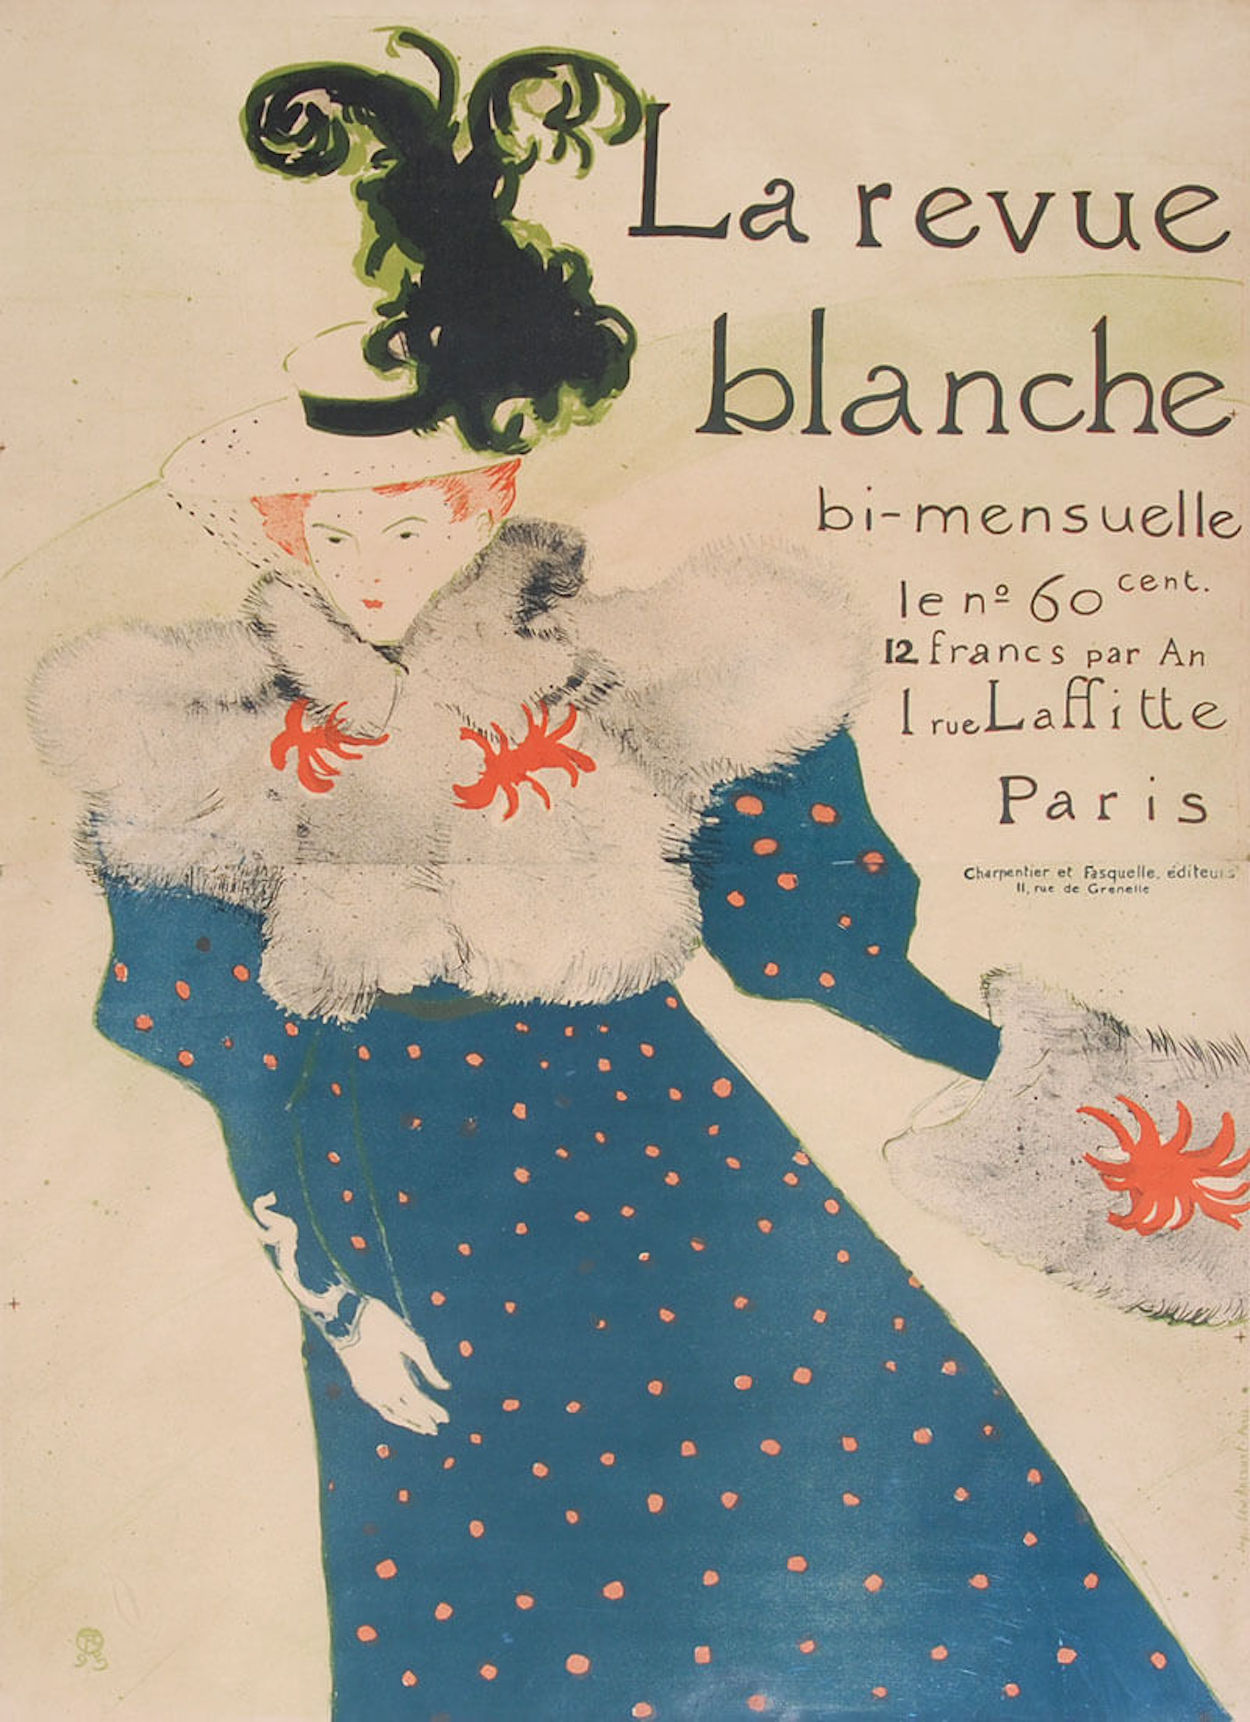 Афиша для La Revue Blanche by Henri de Toulouse-Lautrec - 1895 - 91.2 x 125.5 cm 